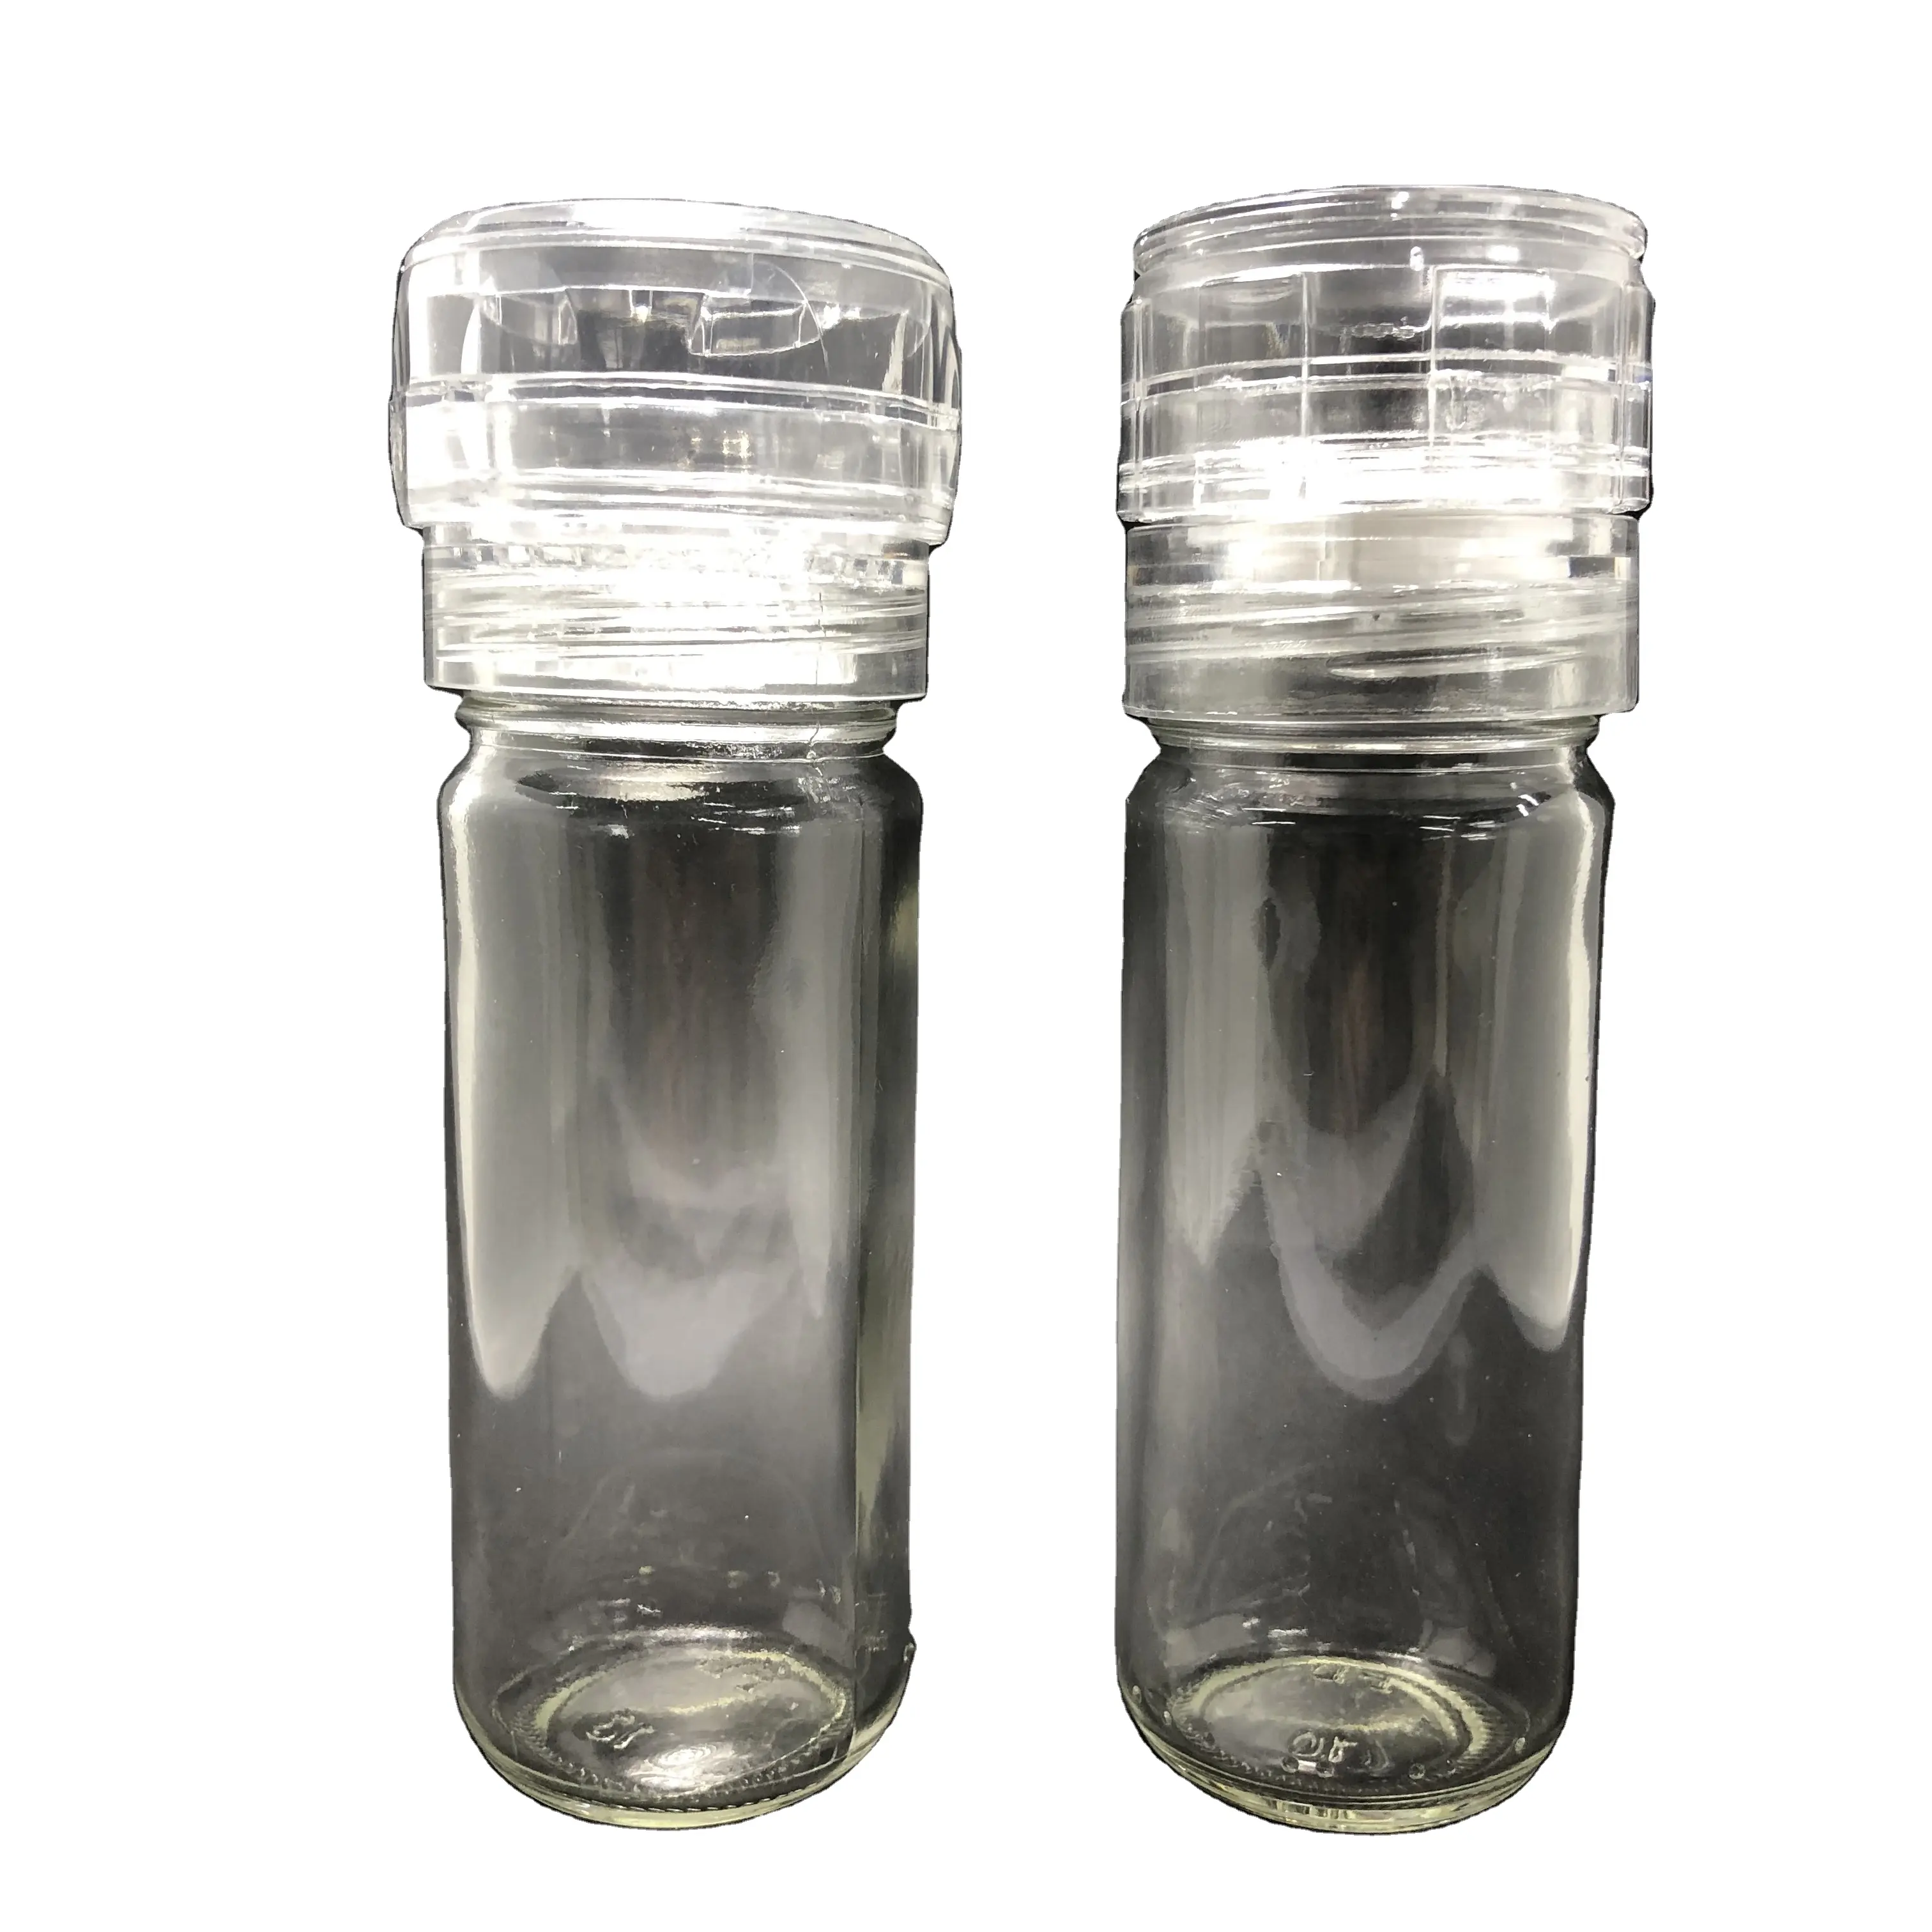 Botella acrílica de sal y pimienta transparente, trituradora de especias de plástico, 100ml